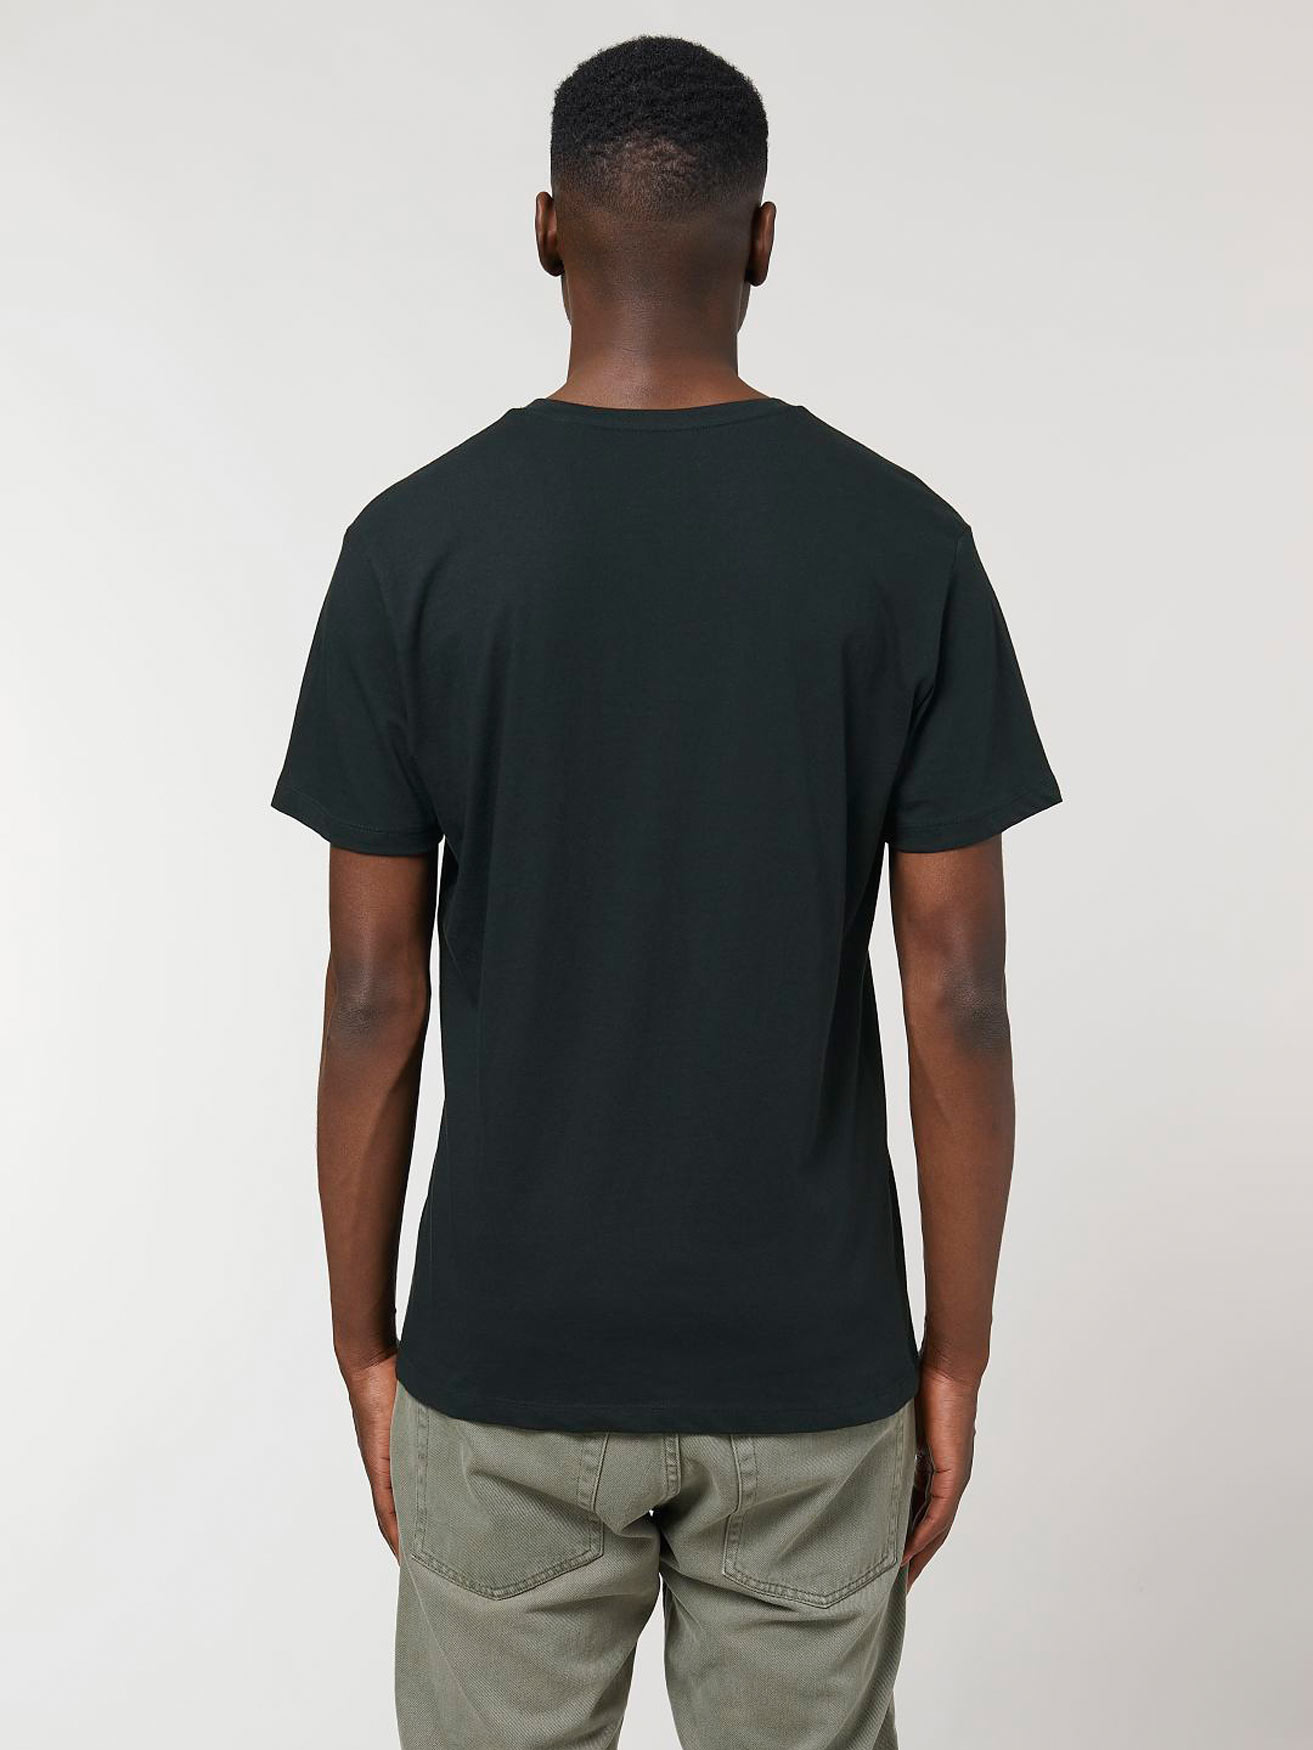 Schwarzes Basic T-Shirt mit V-Ausschnitt - ökofair | V-Shirts